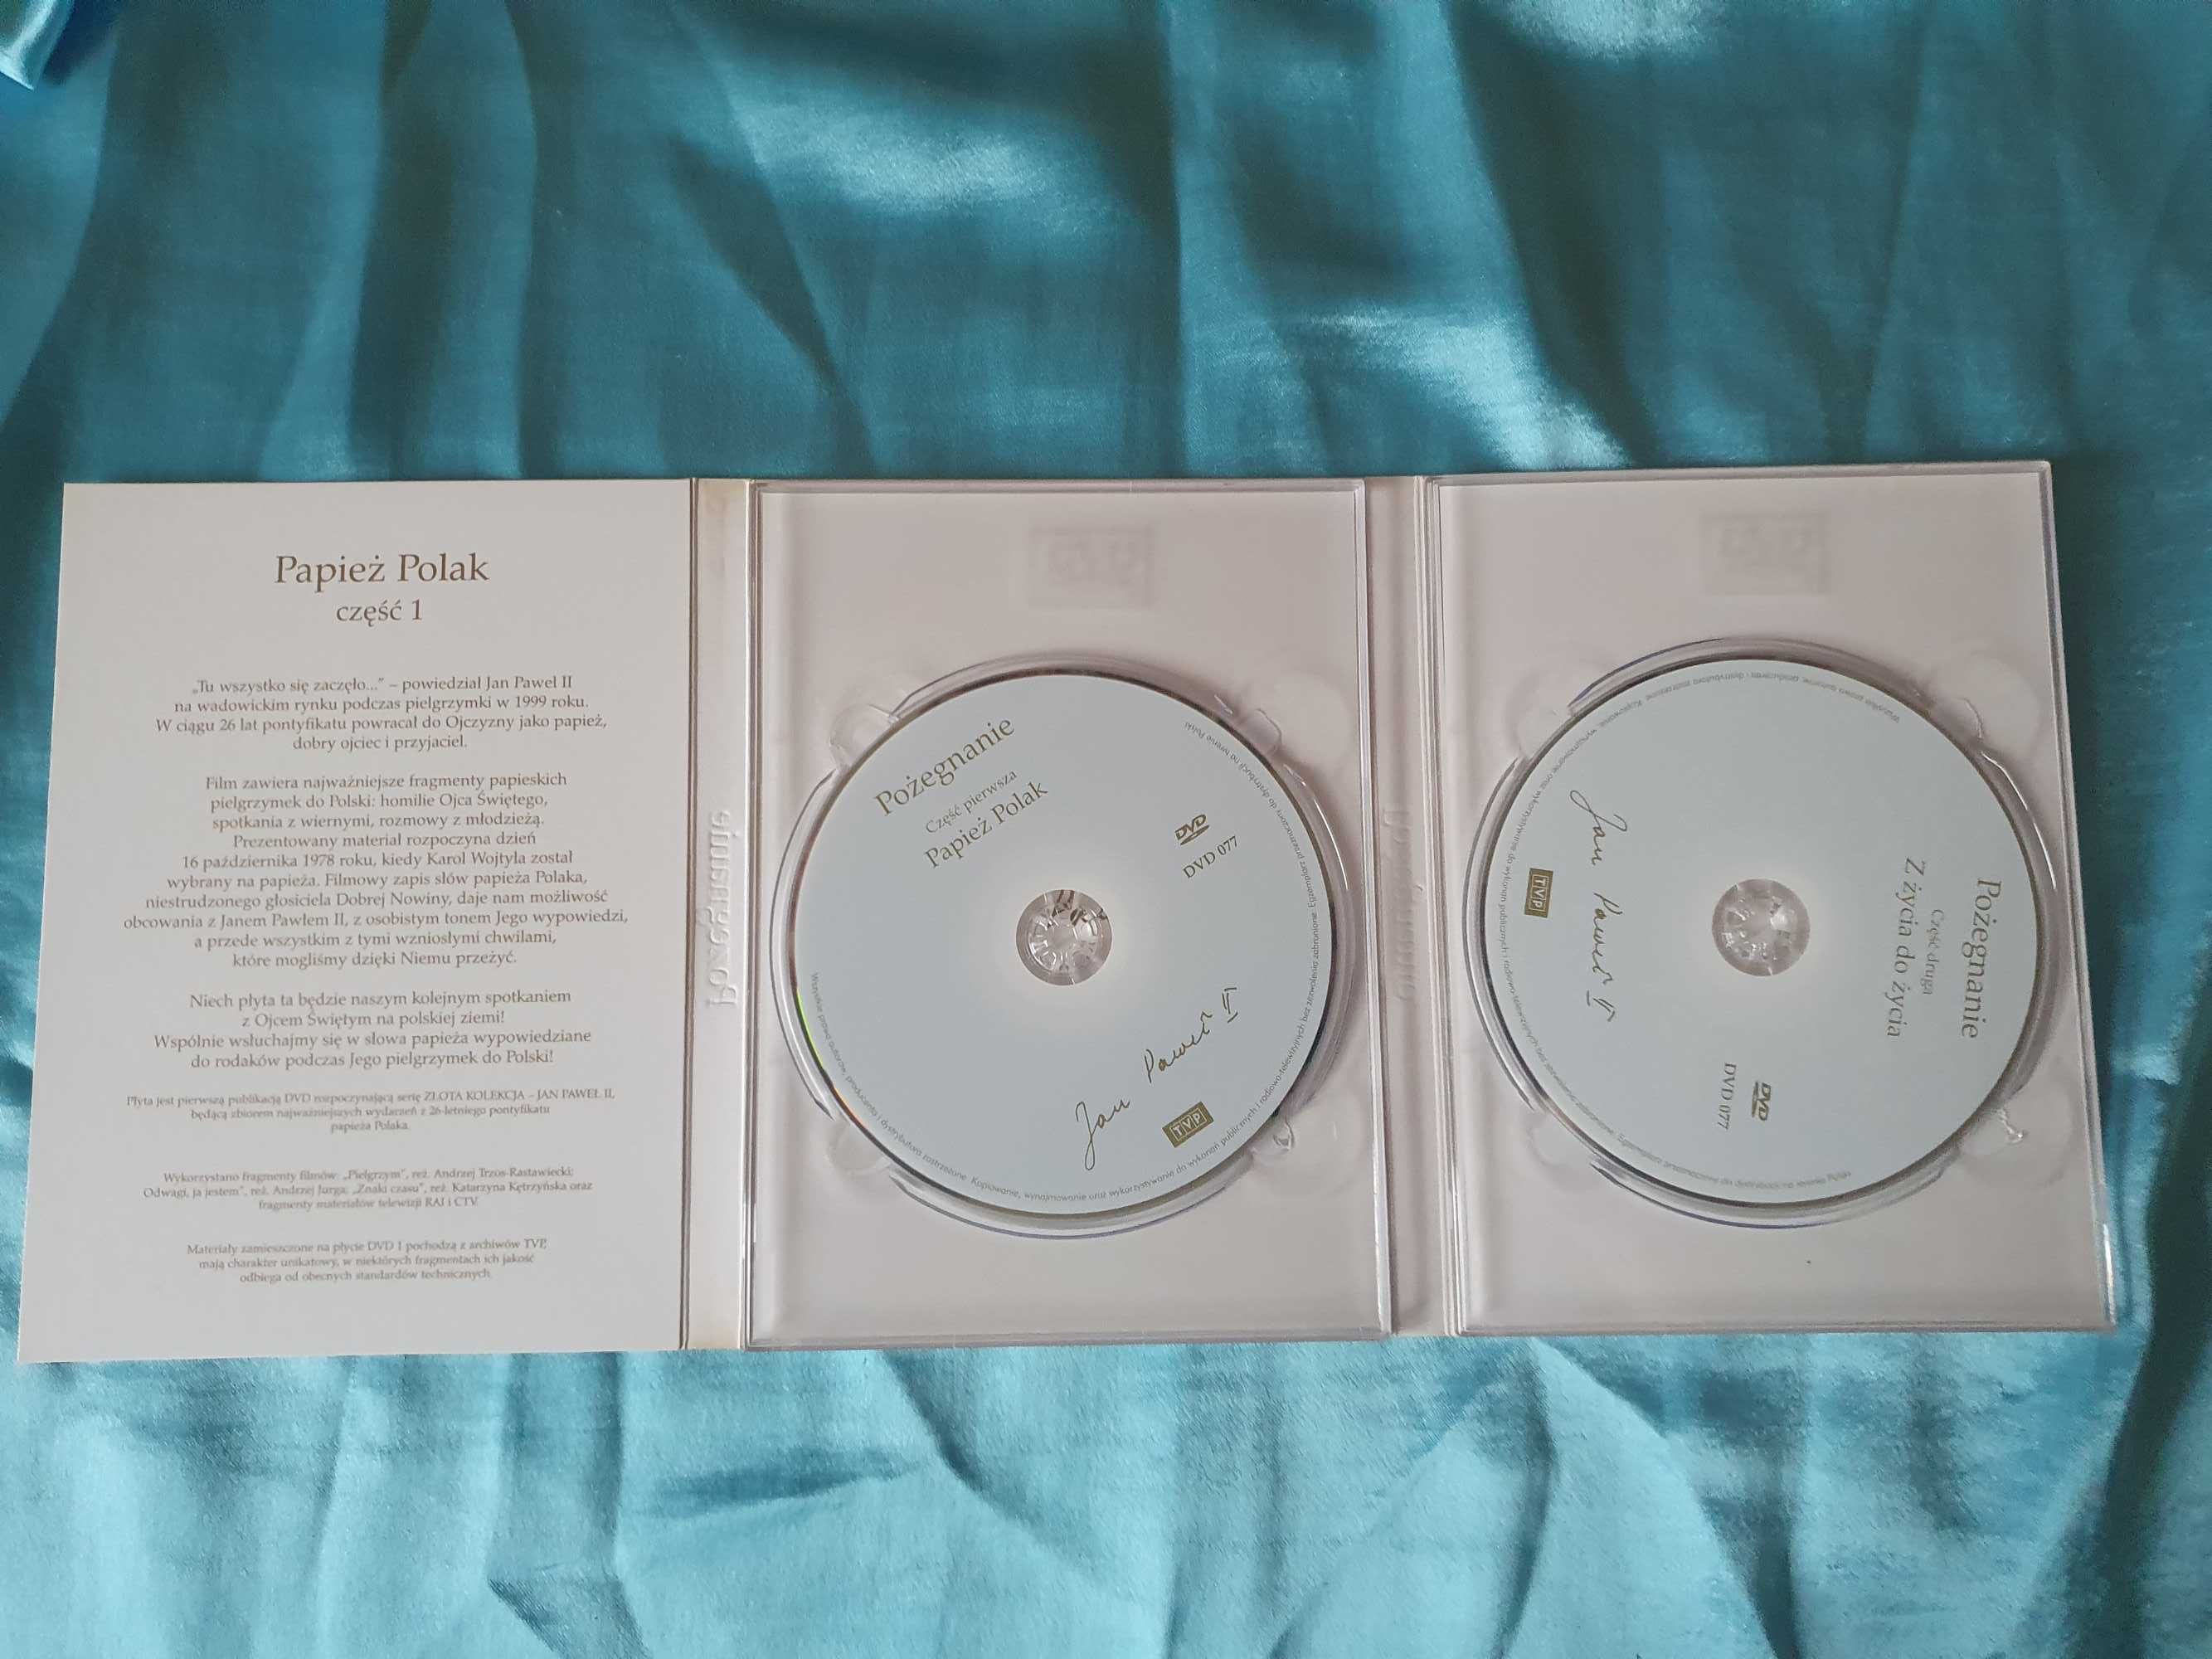 Złota kolekcja JAN PAWEŁ II albumy DVD